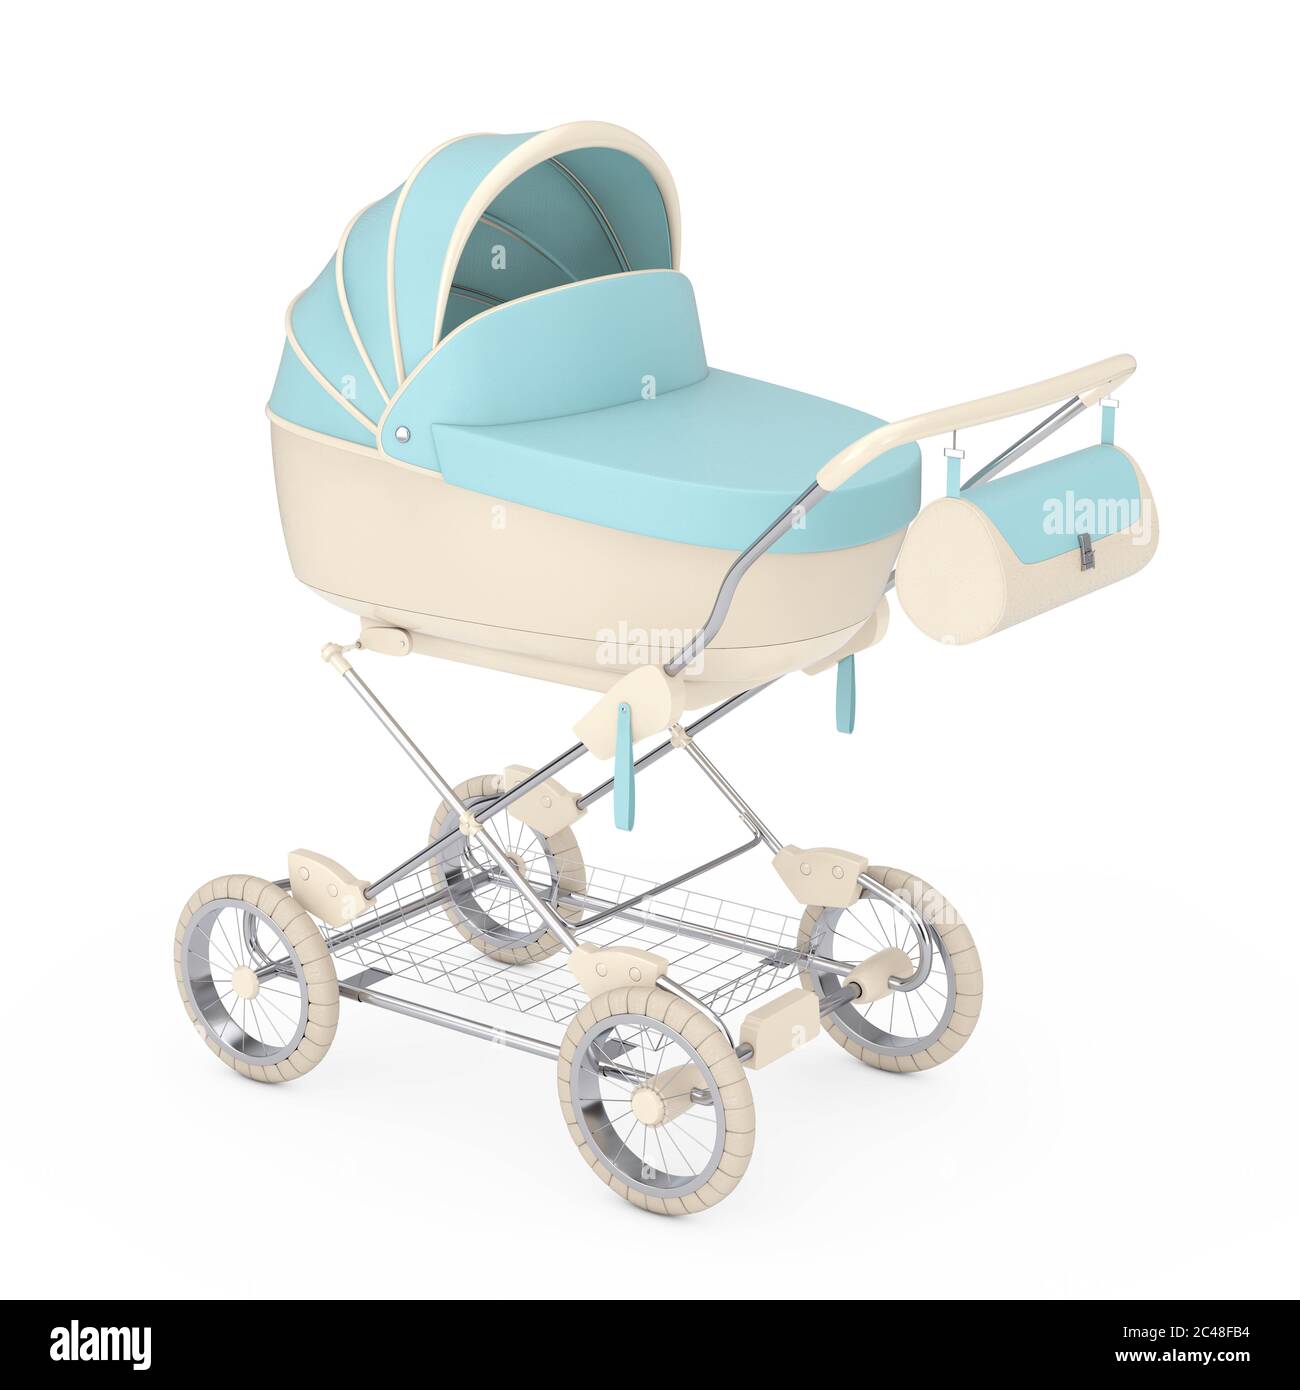 Moderner blauer Babywagen, Kinderwagen, Kinderwagen auf weißem Hintergrund.  3d-Rendering Stockfotografie - Alamy